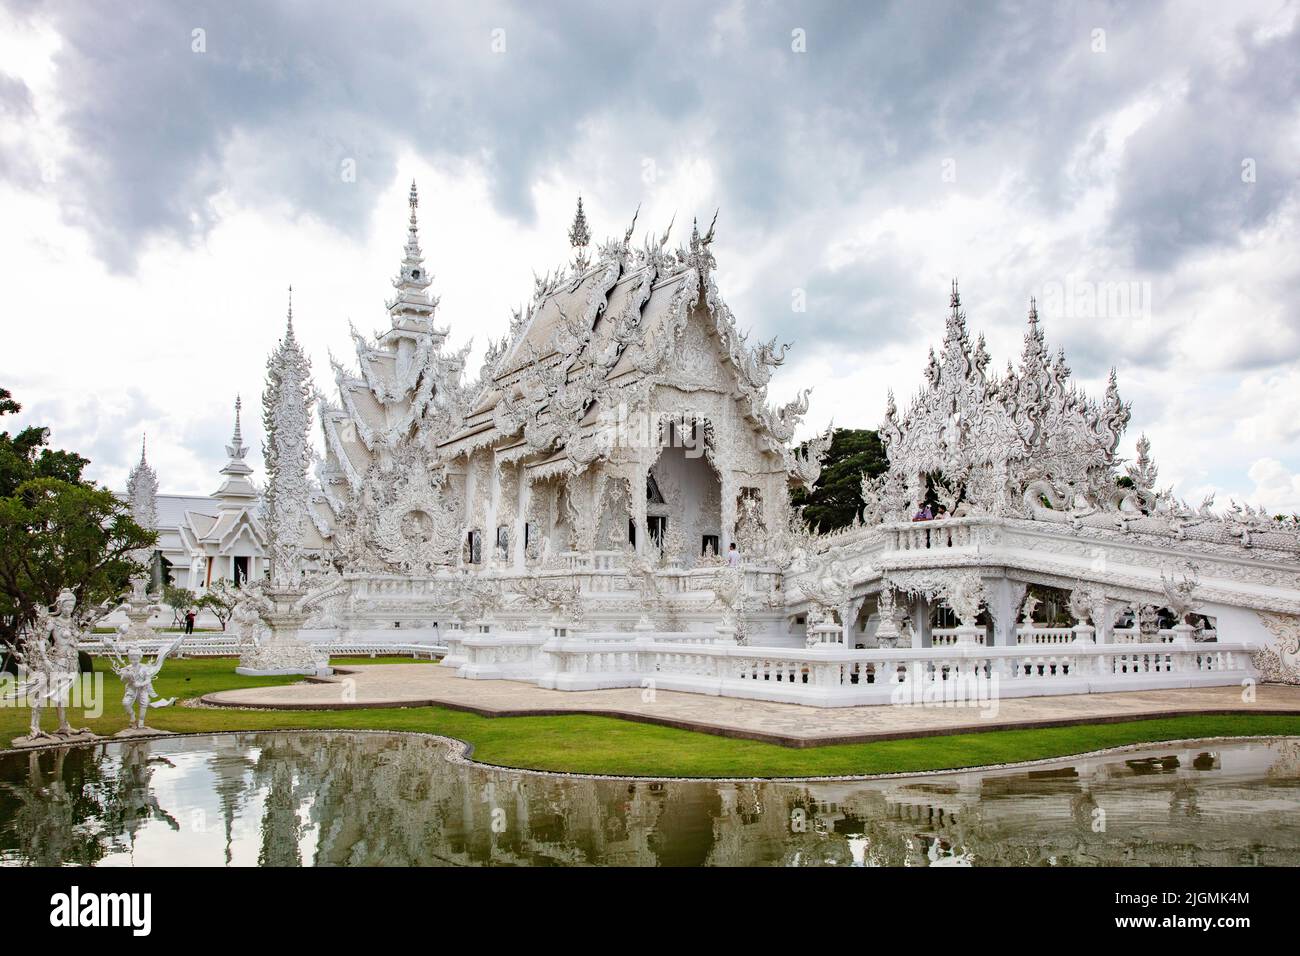 El moderno Wat Rong Khun o TEMPLO BLANCO construido por el artista Chalermachai Kositpipat es hindú y budista - CHIANG Rai, TAILANDIA Foto de stock